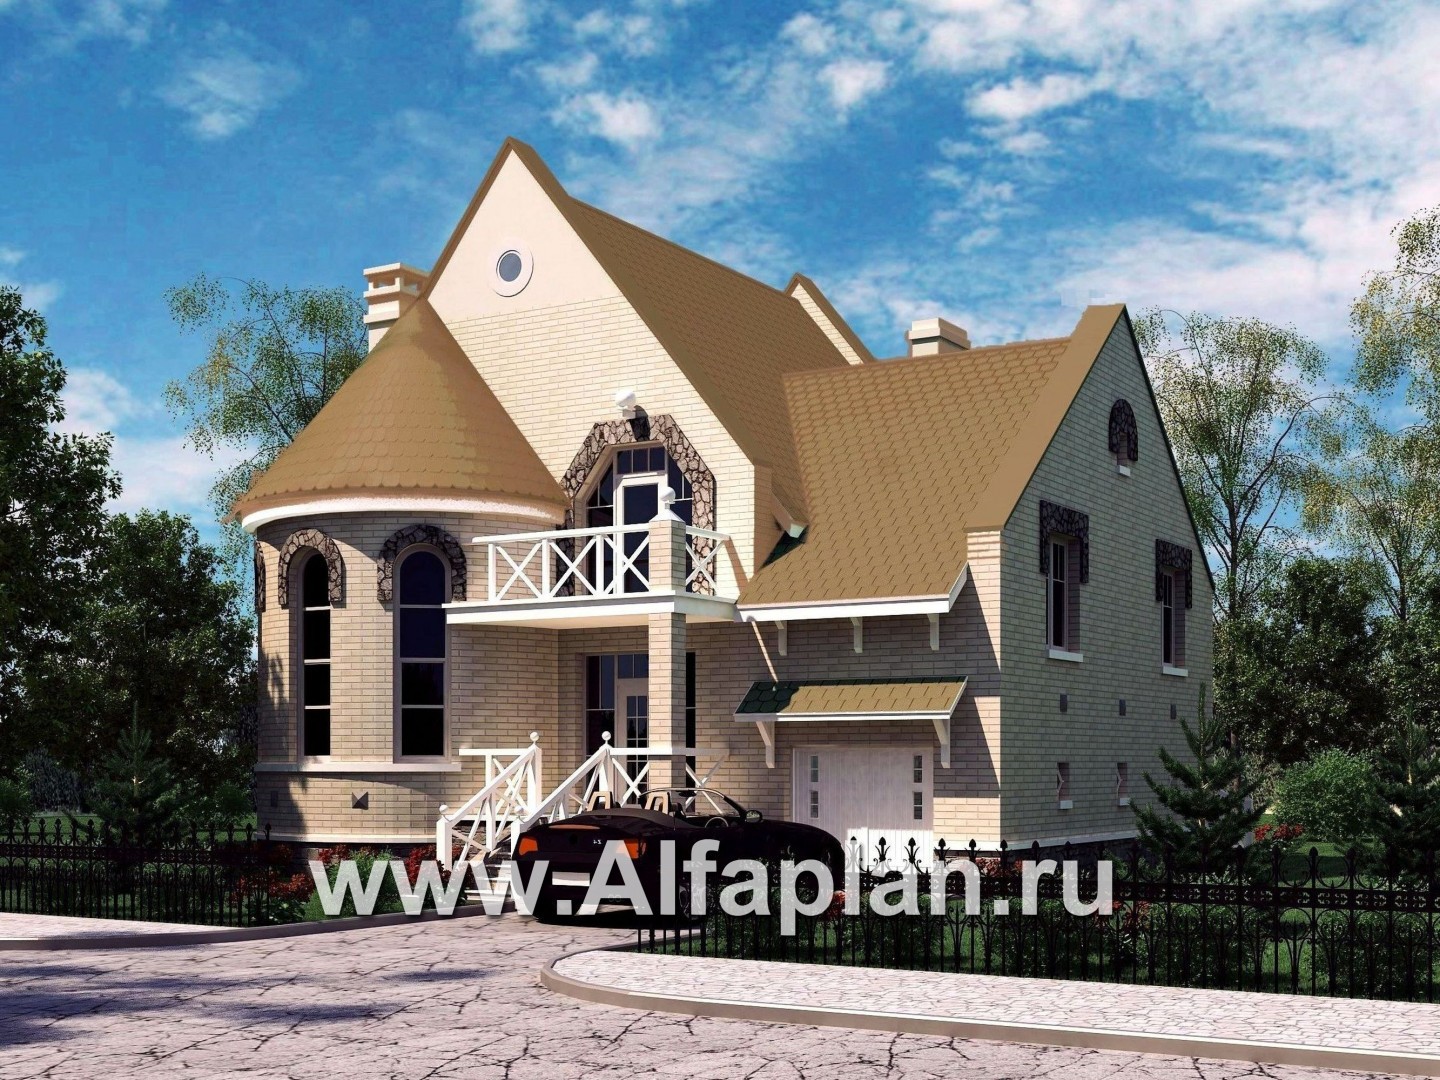 Проекты домов Альфаплан - «Онегин» - представительный загородный дом в стиле замка - основное изображение